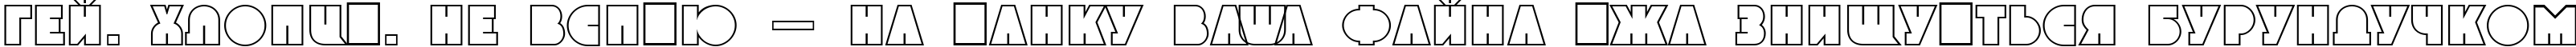 Пример написания шрифтом a_GrotoOtl текста на украинском